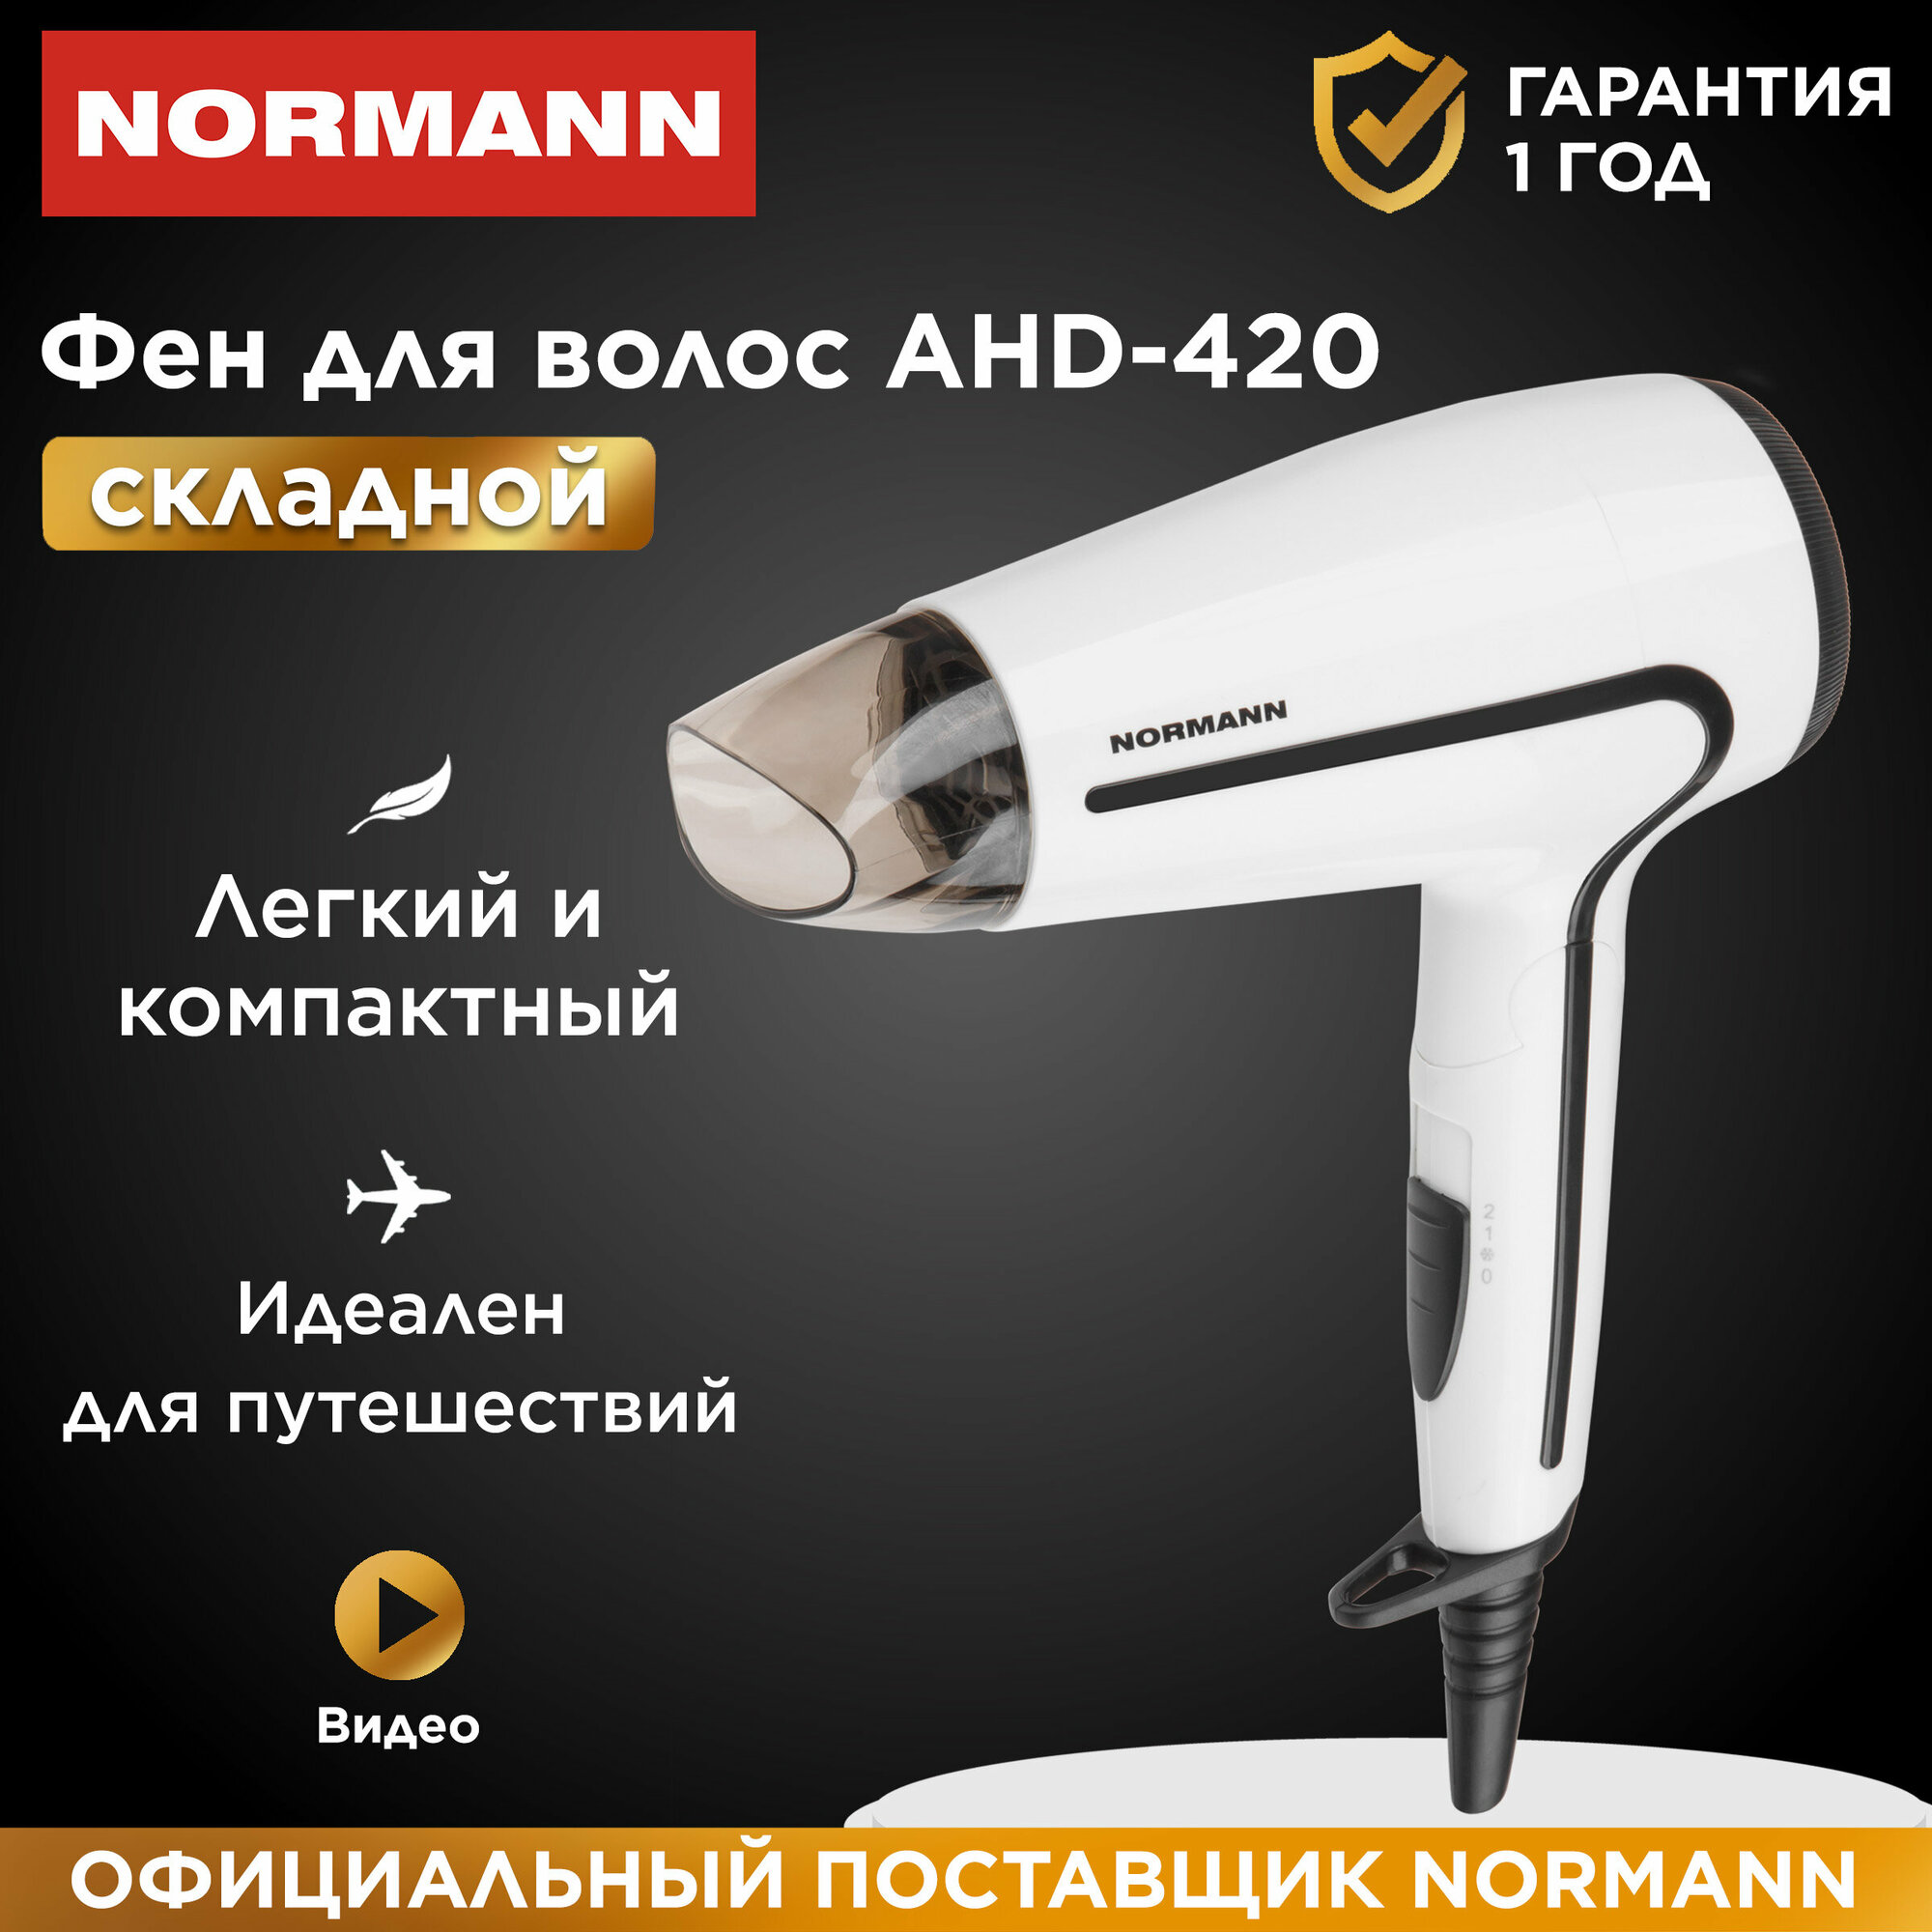 Фен для волос со складной ручной NORMANN AHD-420